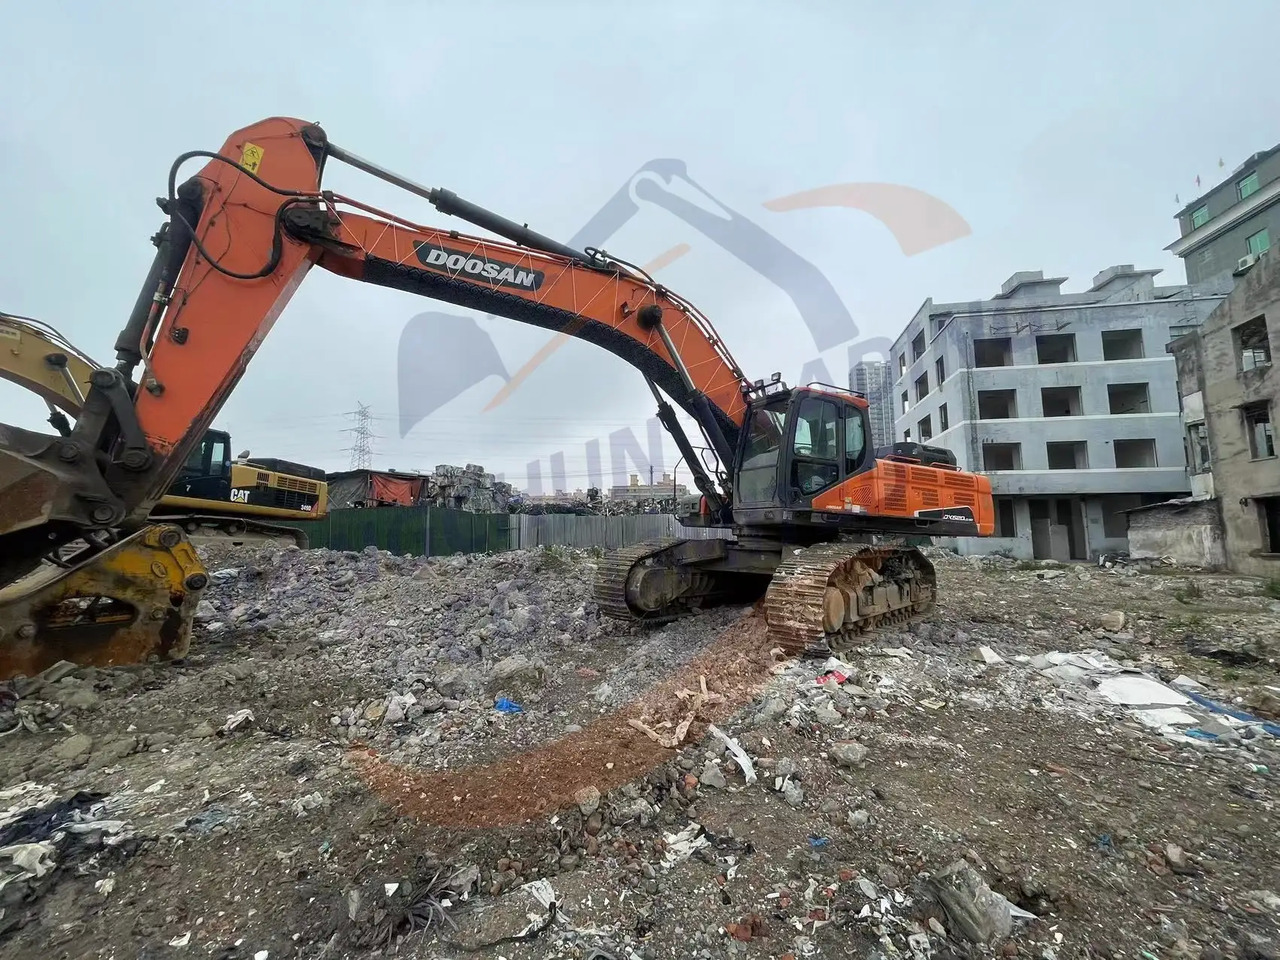 履带式挖掘机 Low running hours Used Doosan excavator DX520LC-9C in good condition for sale：图5